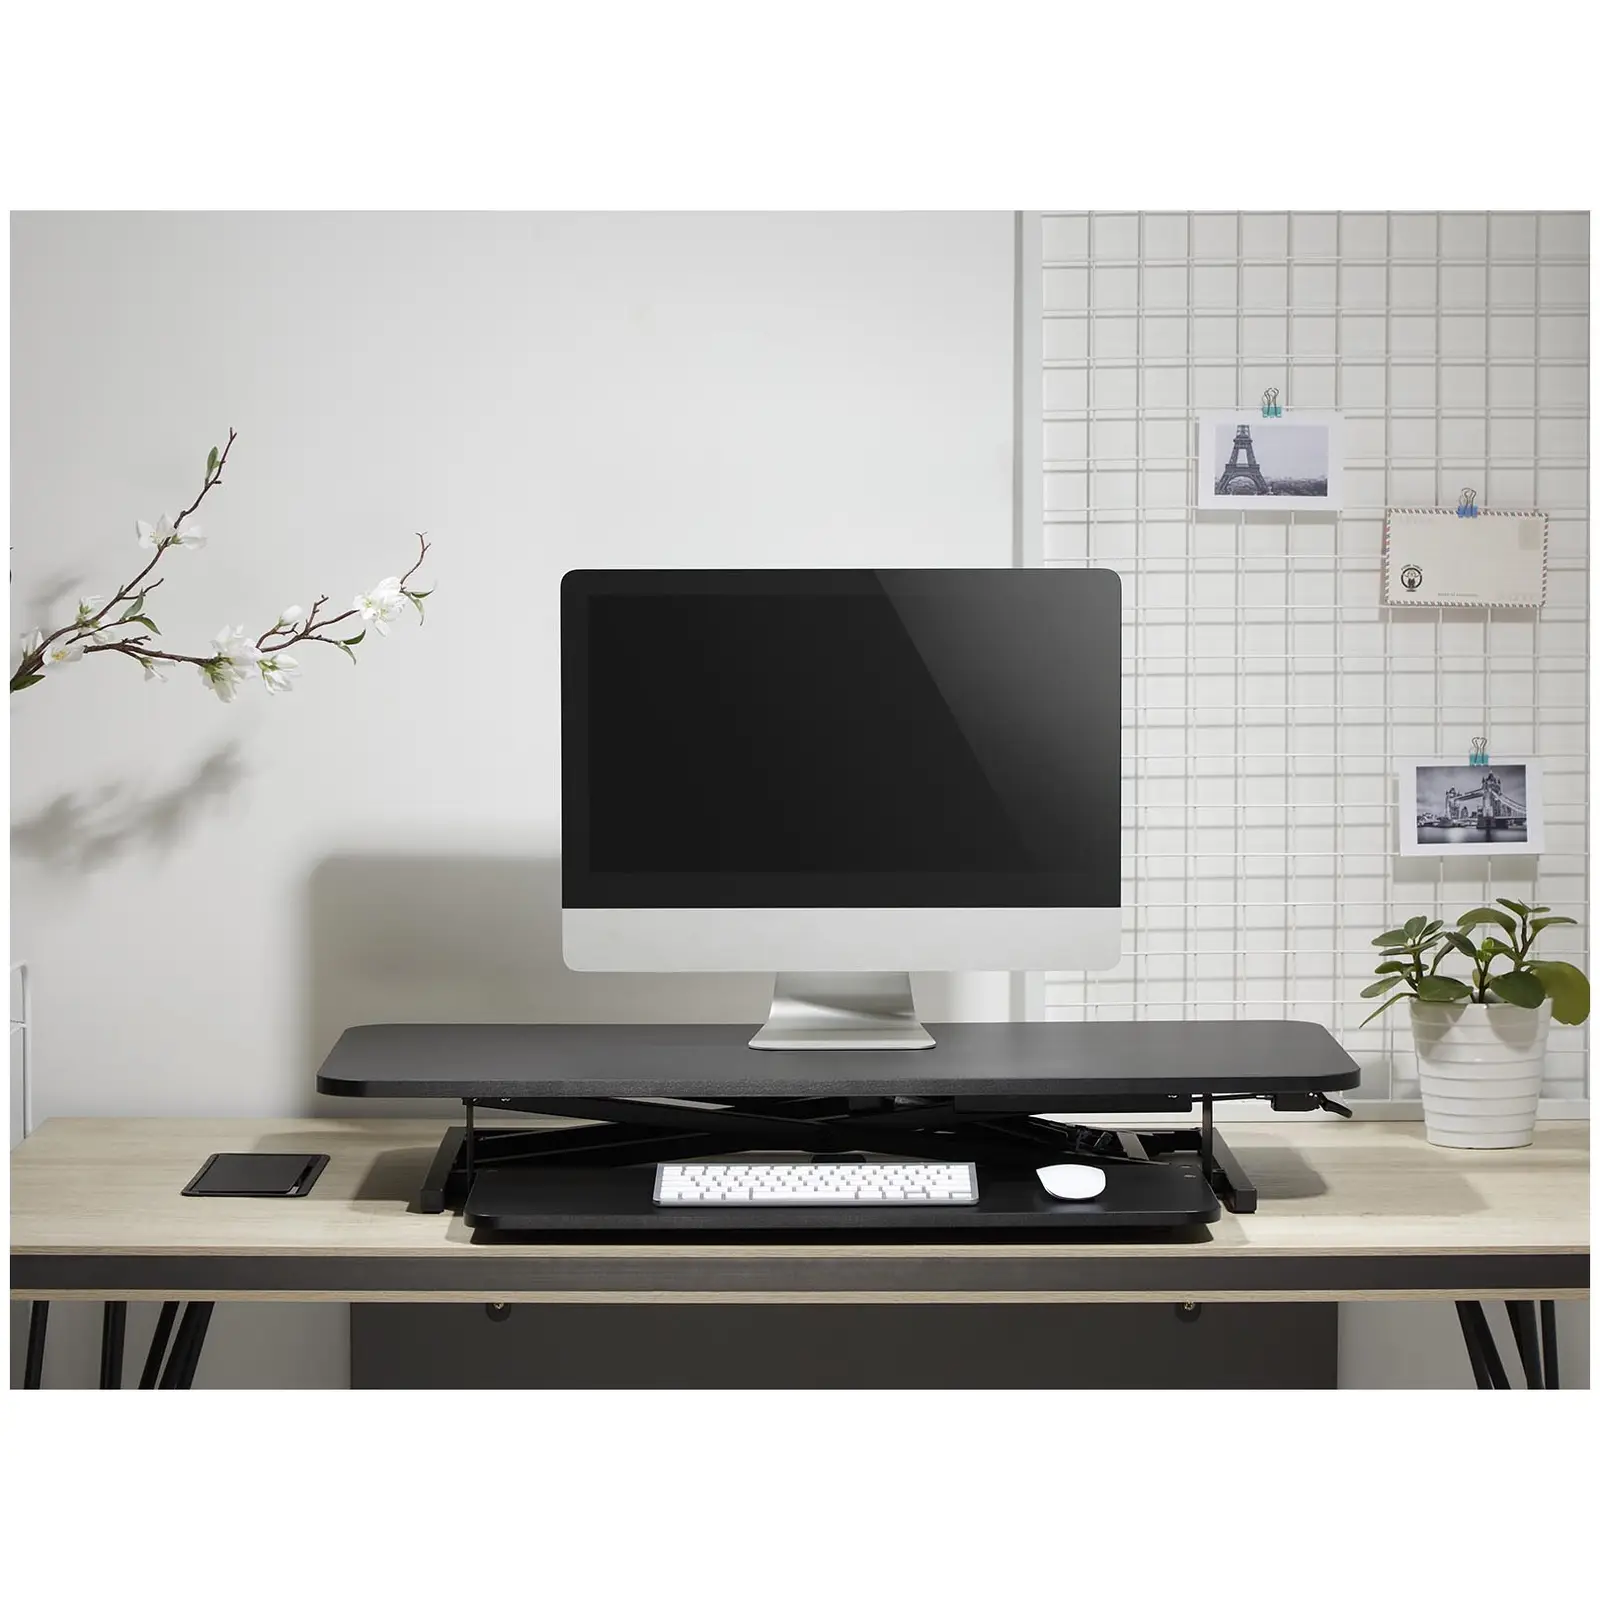 Rialzo per scrivania standing desk - Altezza regolabile 115-500 mm